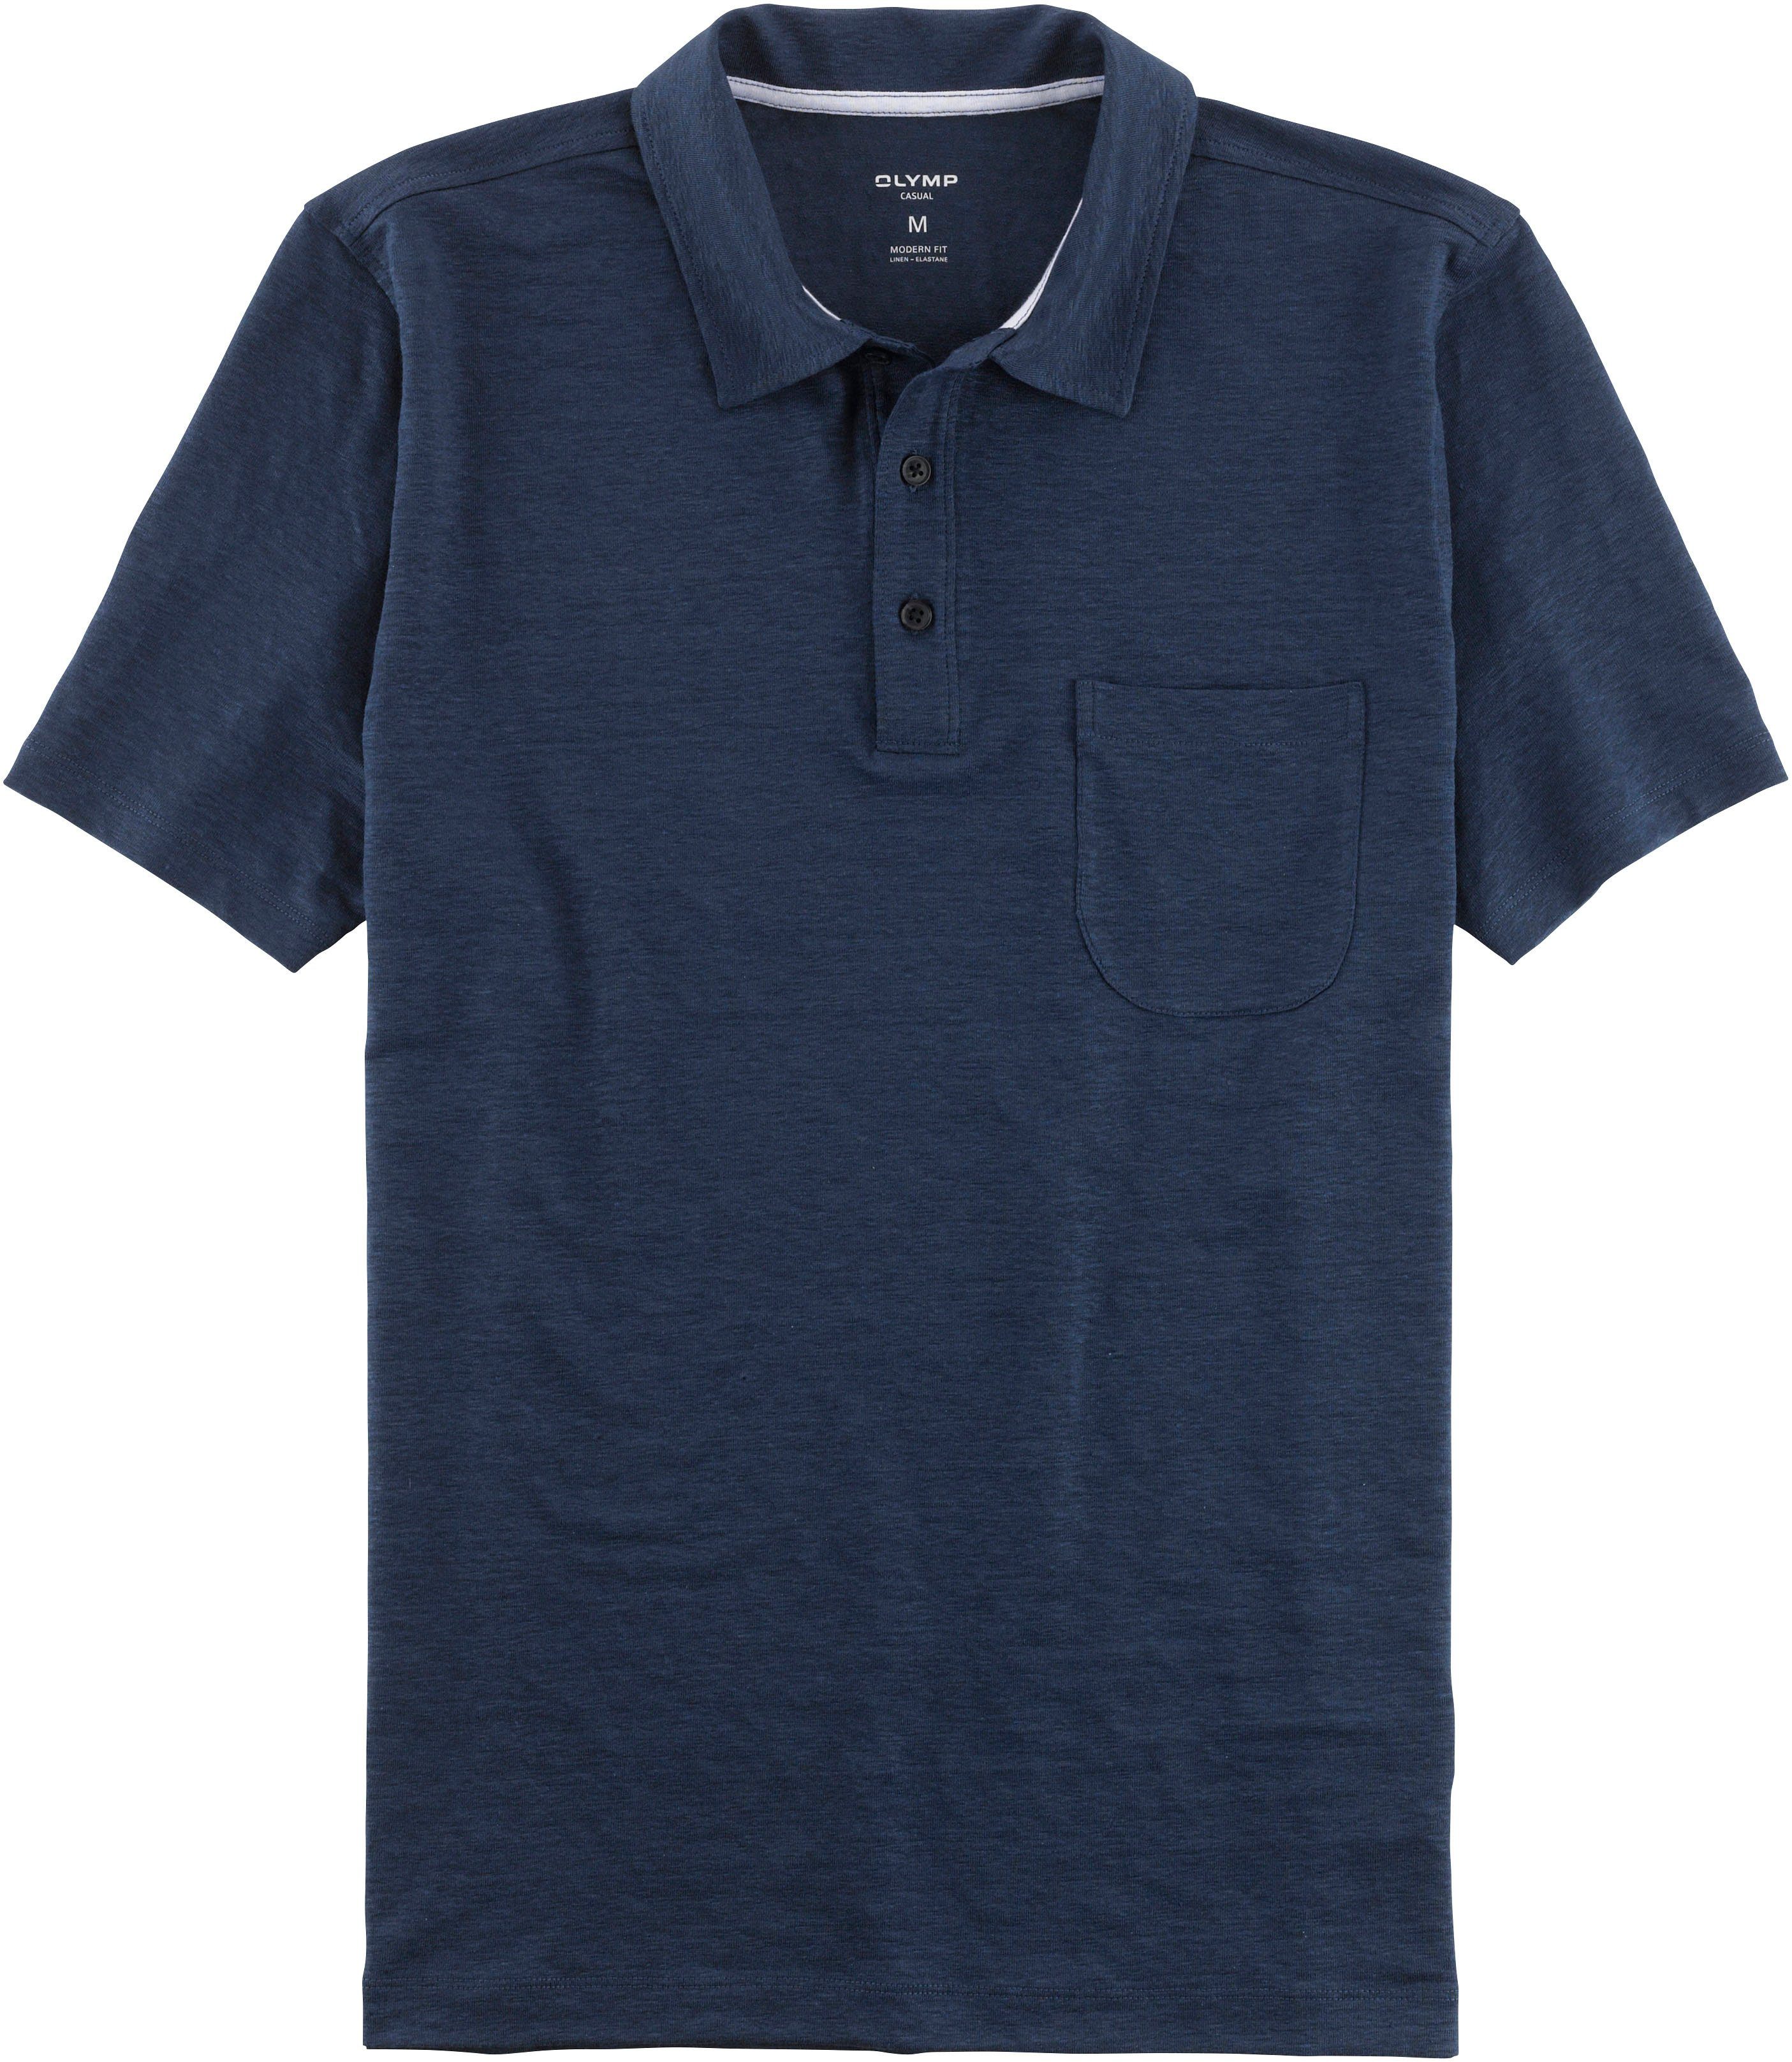 OLYMP Poloshirt im Hemden-Look mit Leinen in sommerlicher Casual-Optik rauchblau